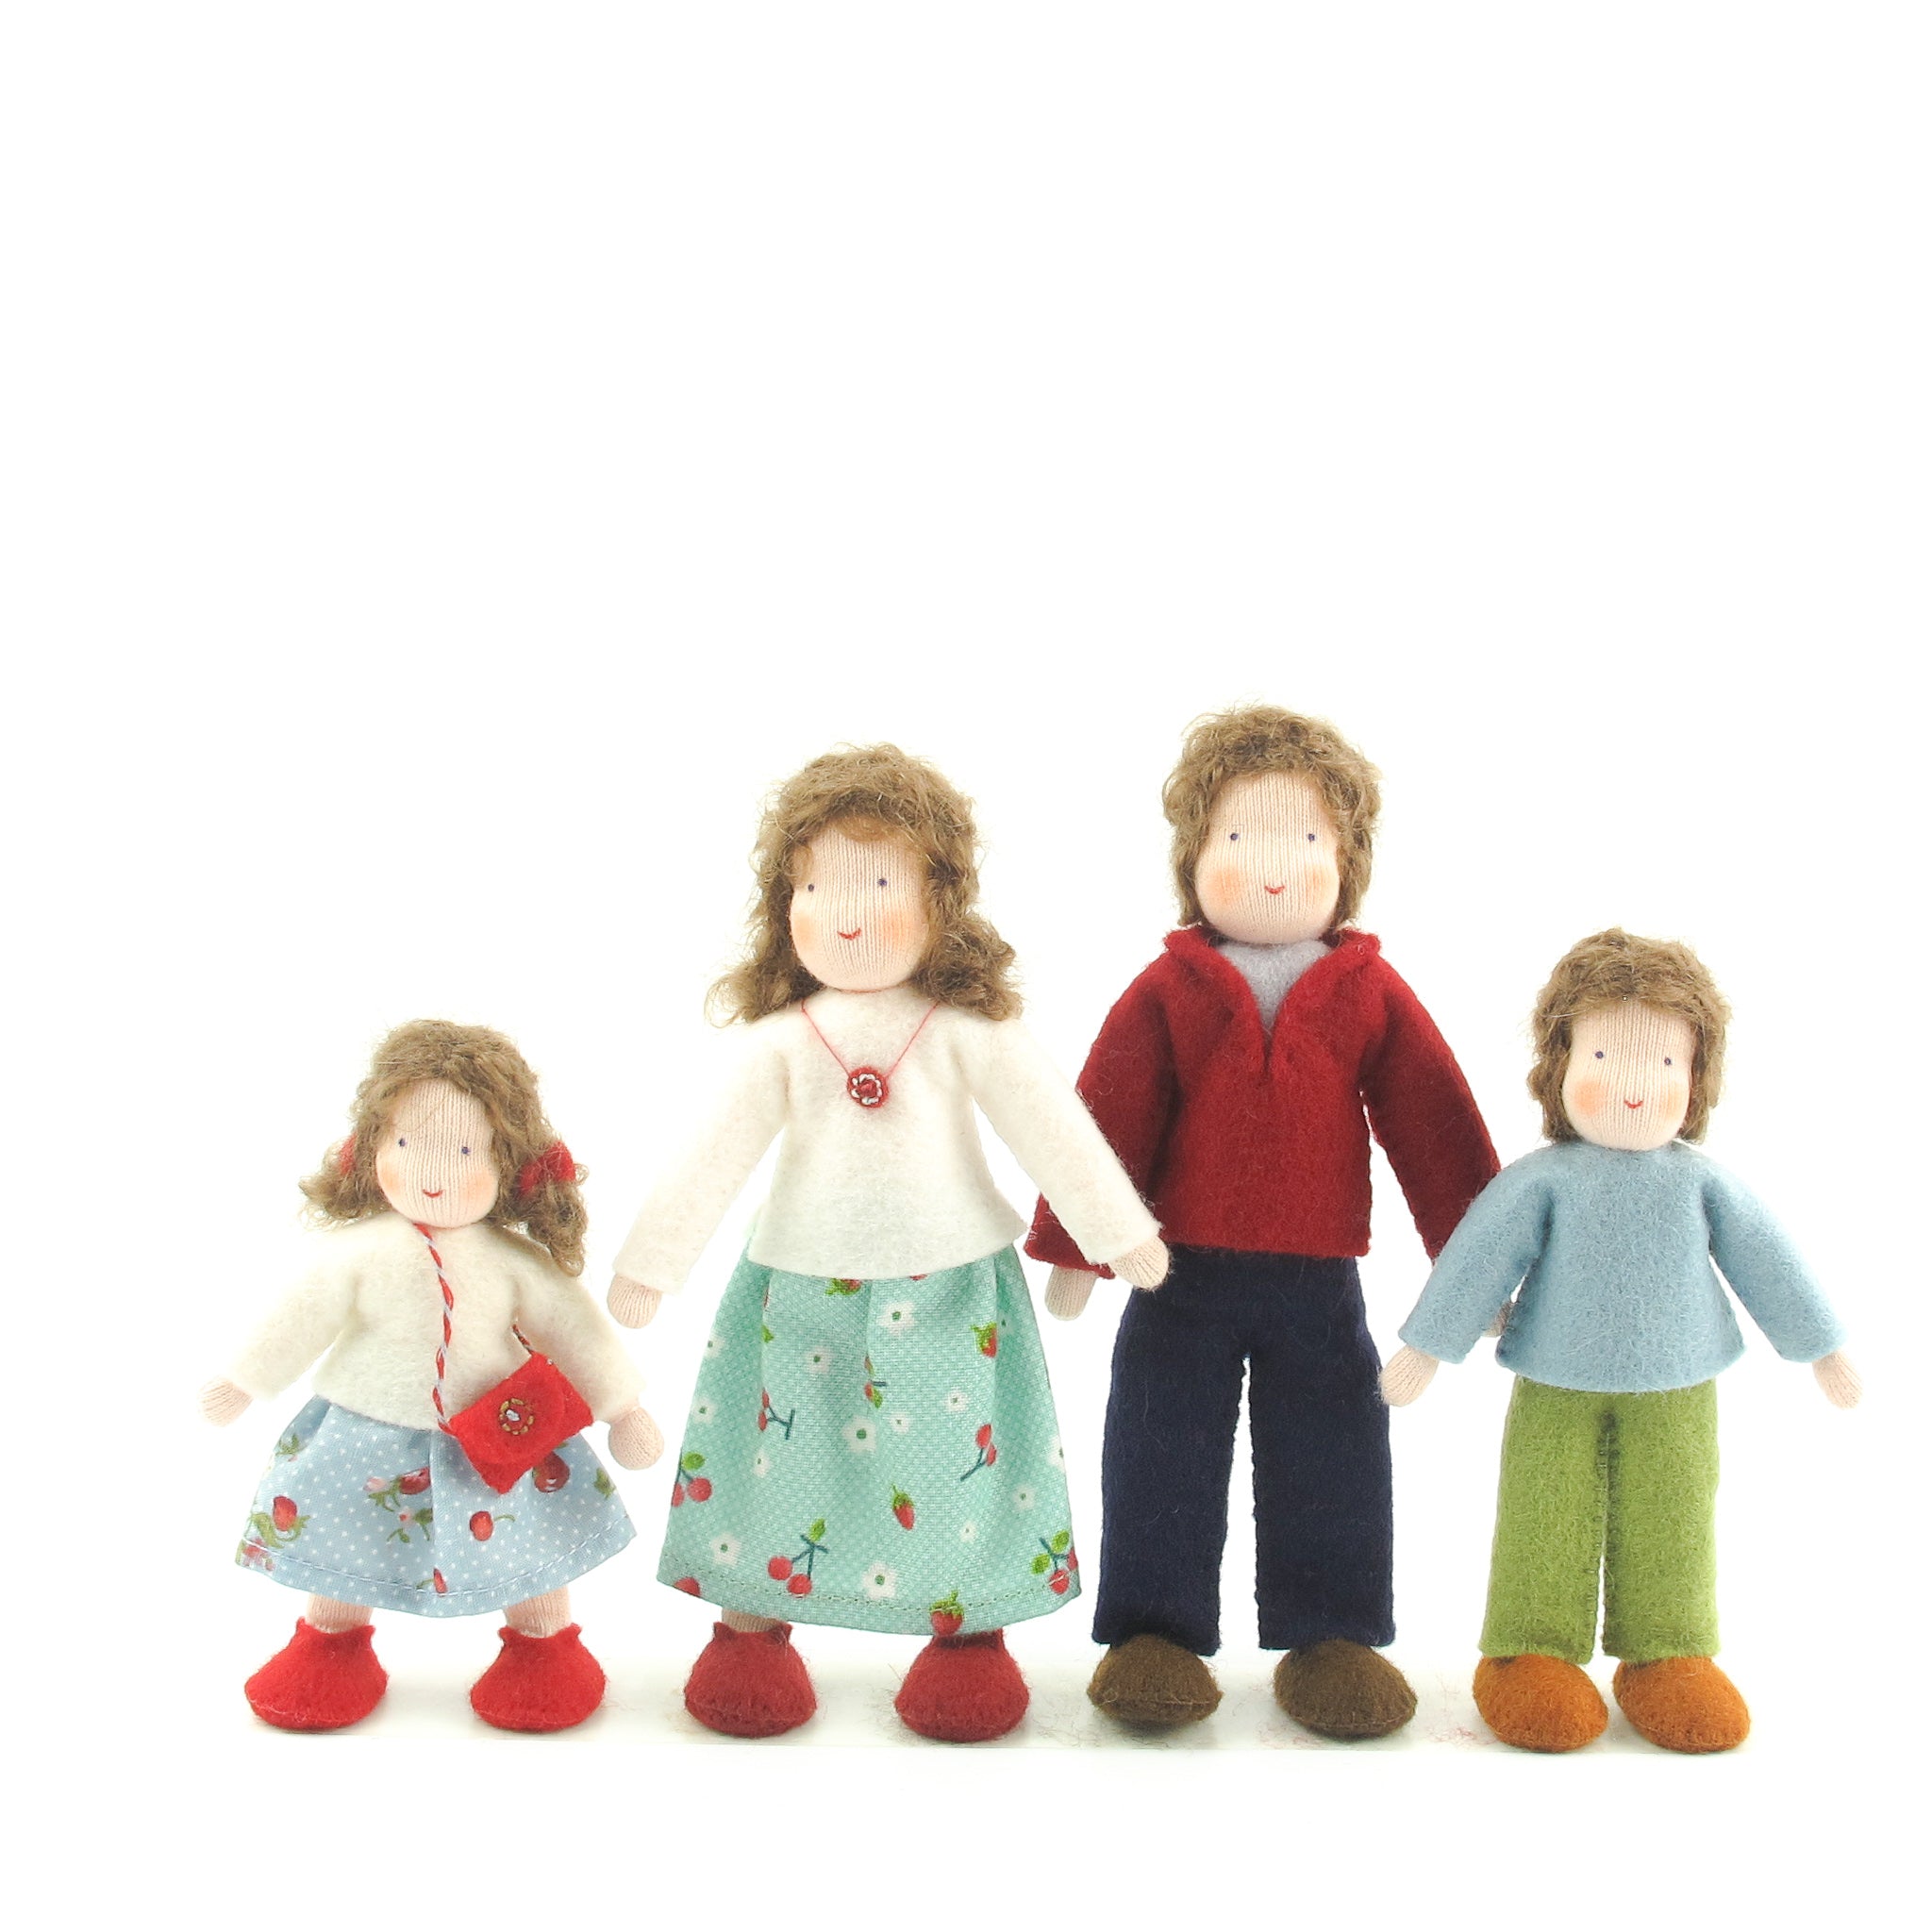 dollhouse dolls